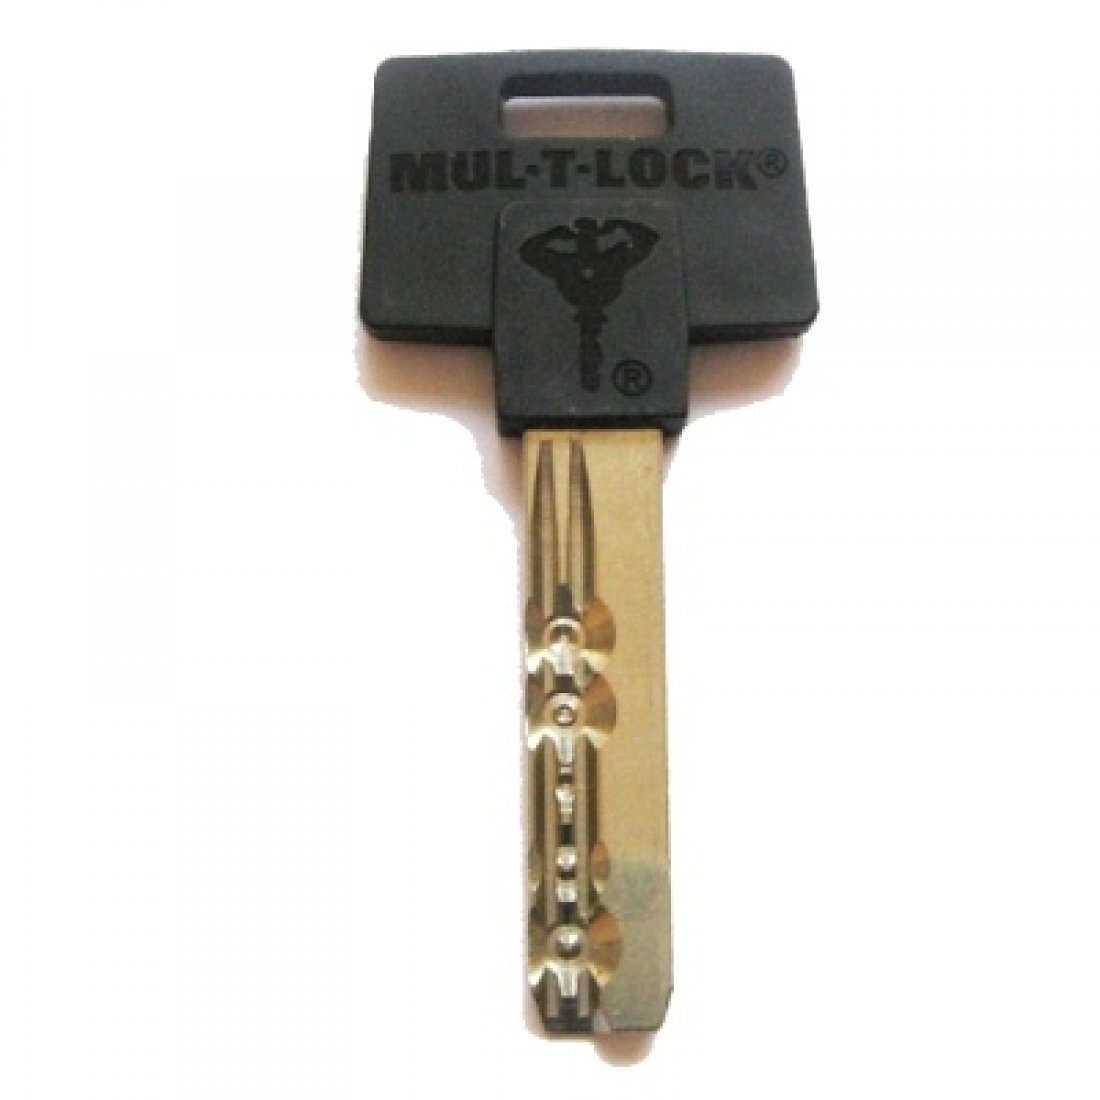 Unique ключ. Ключ mul t Lock Classic. Ключи от Митсубиси mul t Lock. Станок mul t Lock лс5. Mul-t-Lock Classic.